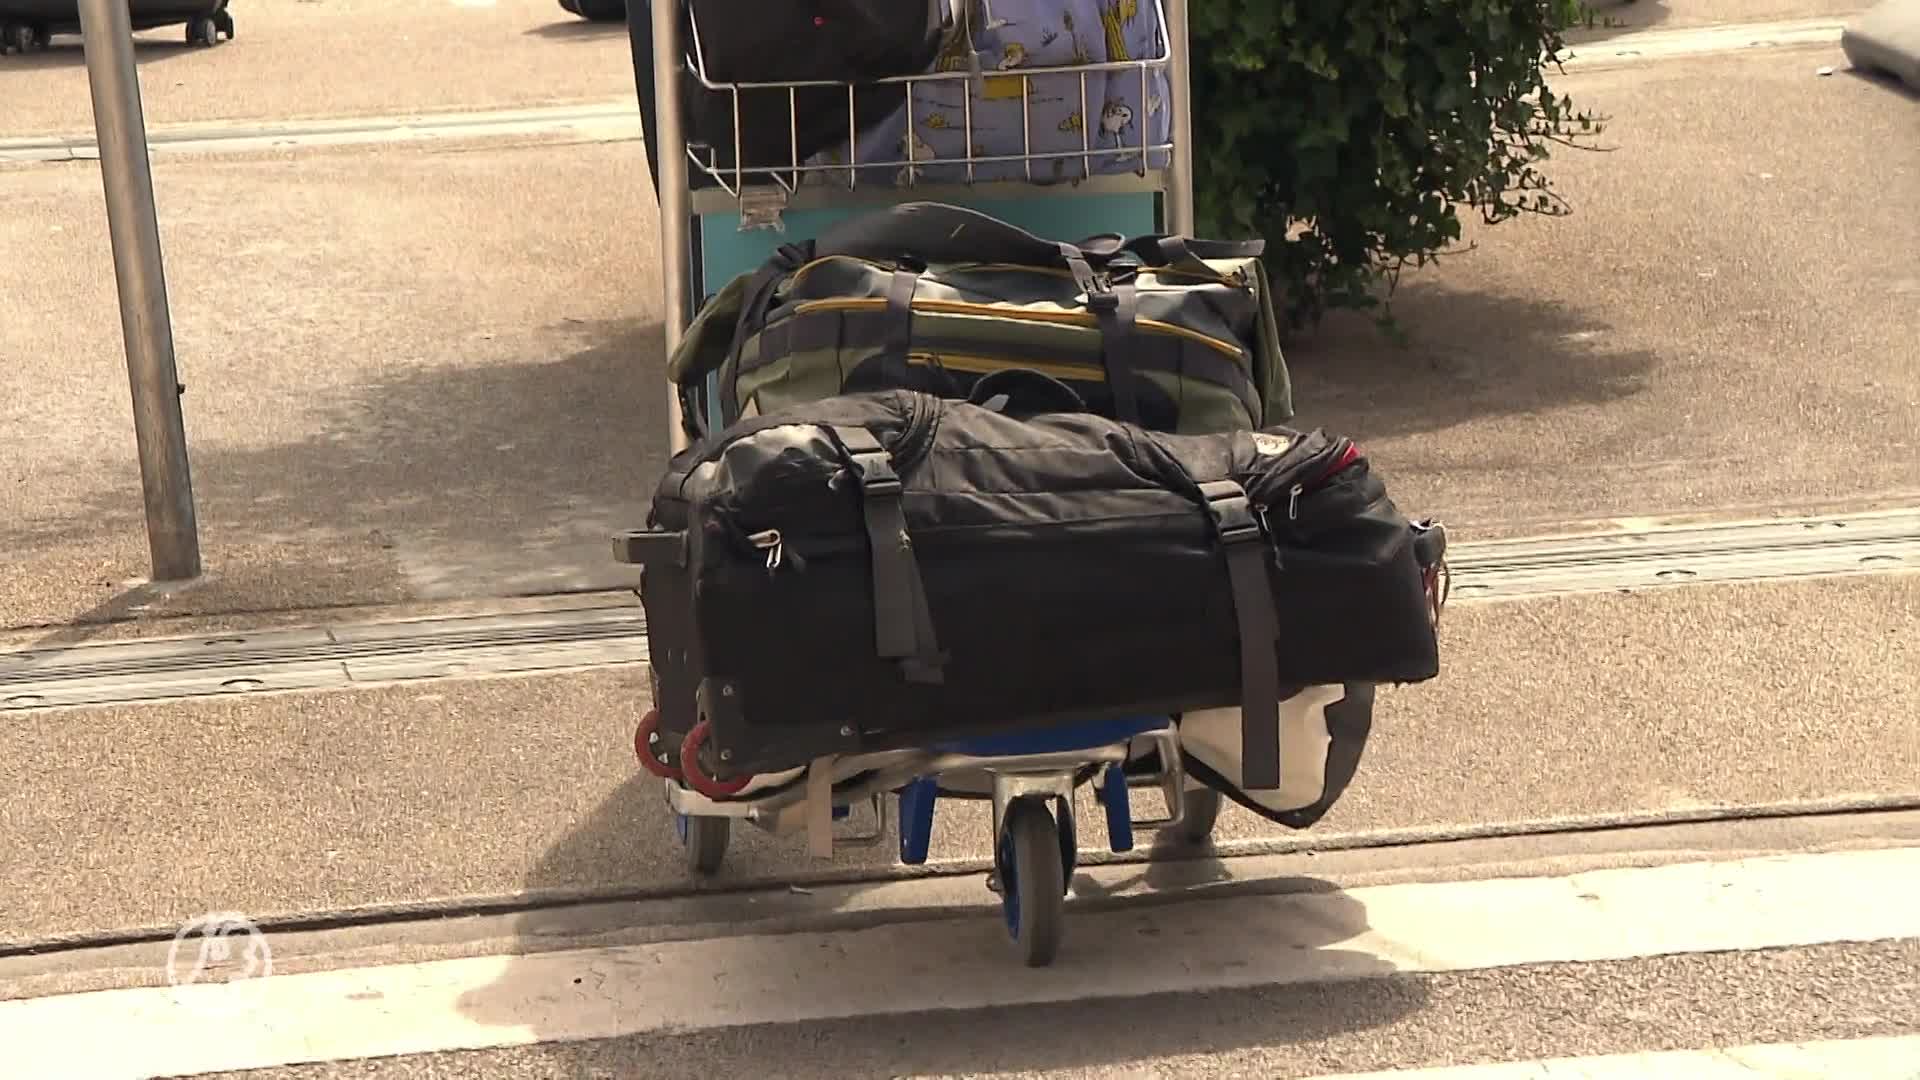 Kofferchaos op Schiphol gaat onverminderd door: 'Al honderden schades en telefoontjes'